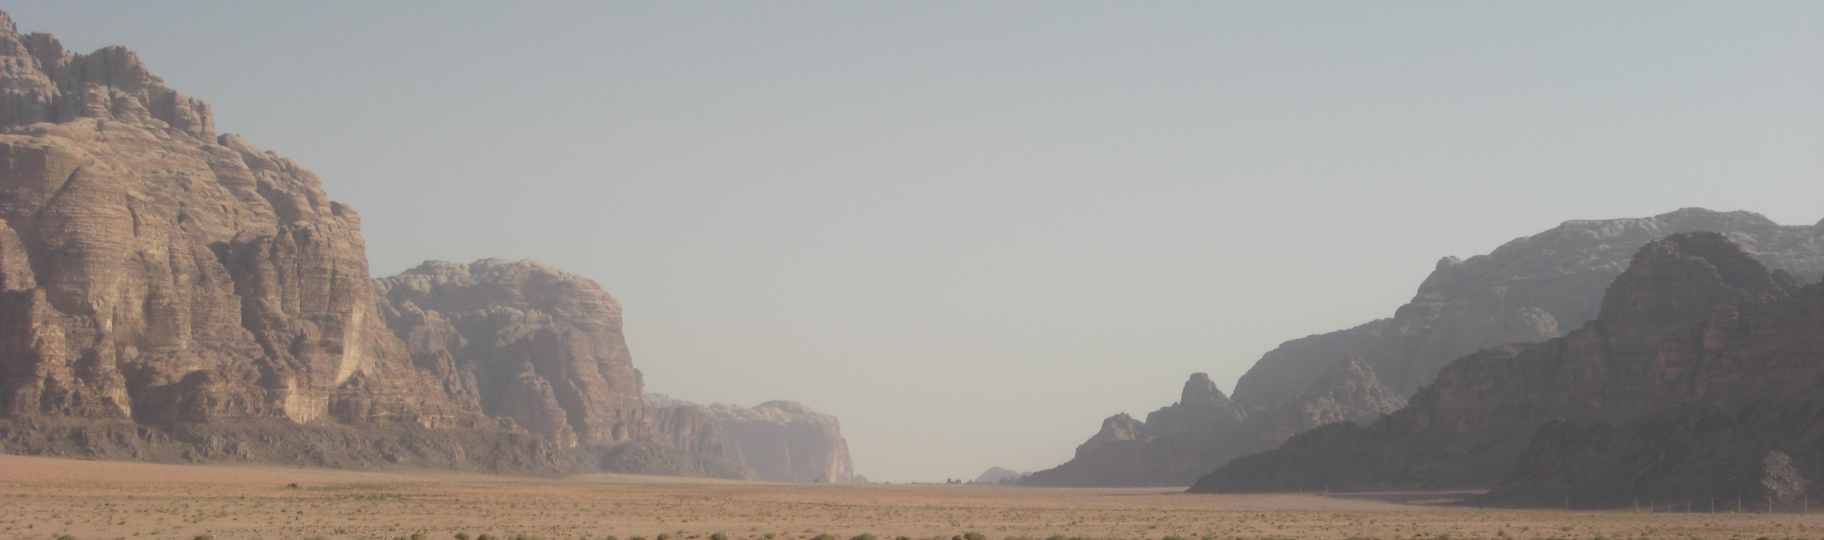 photo of Wadi Rum